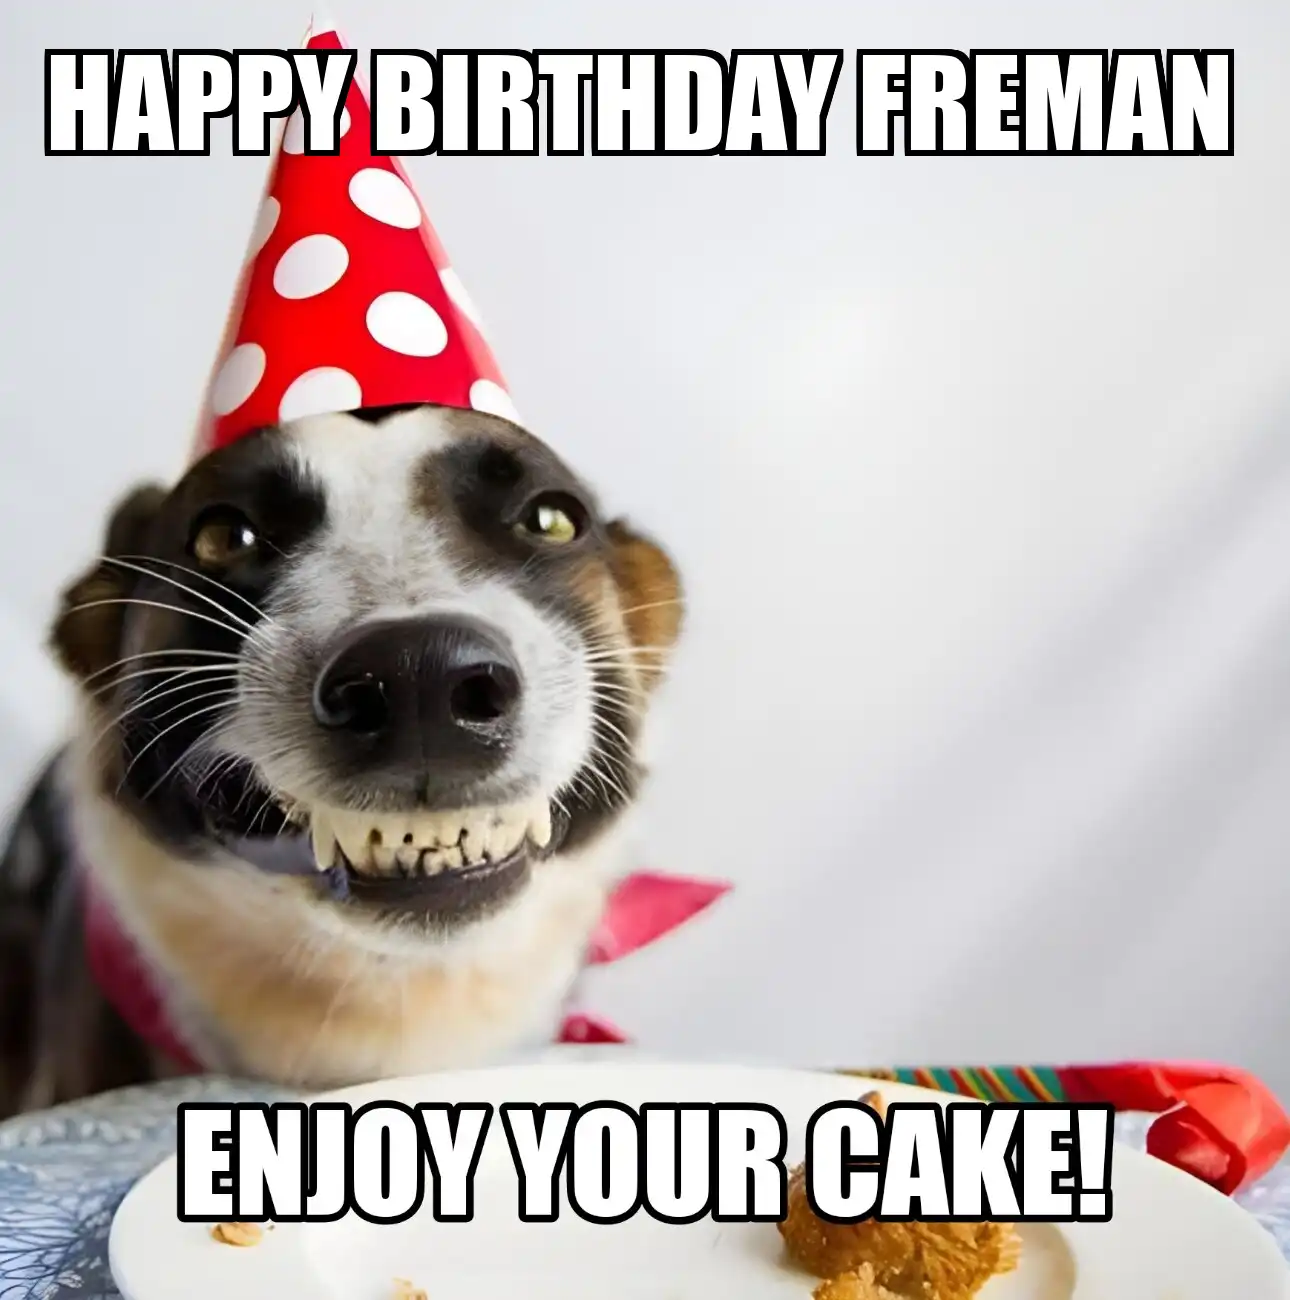 Happy Birthday Freman Enjoy Your Cake Dog Meme